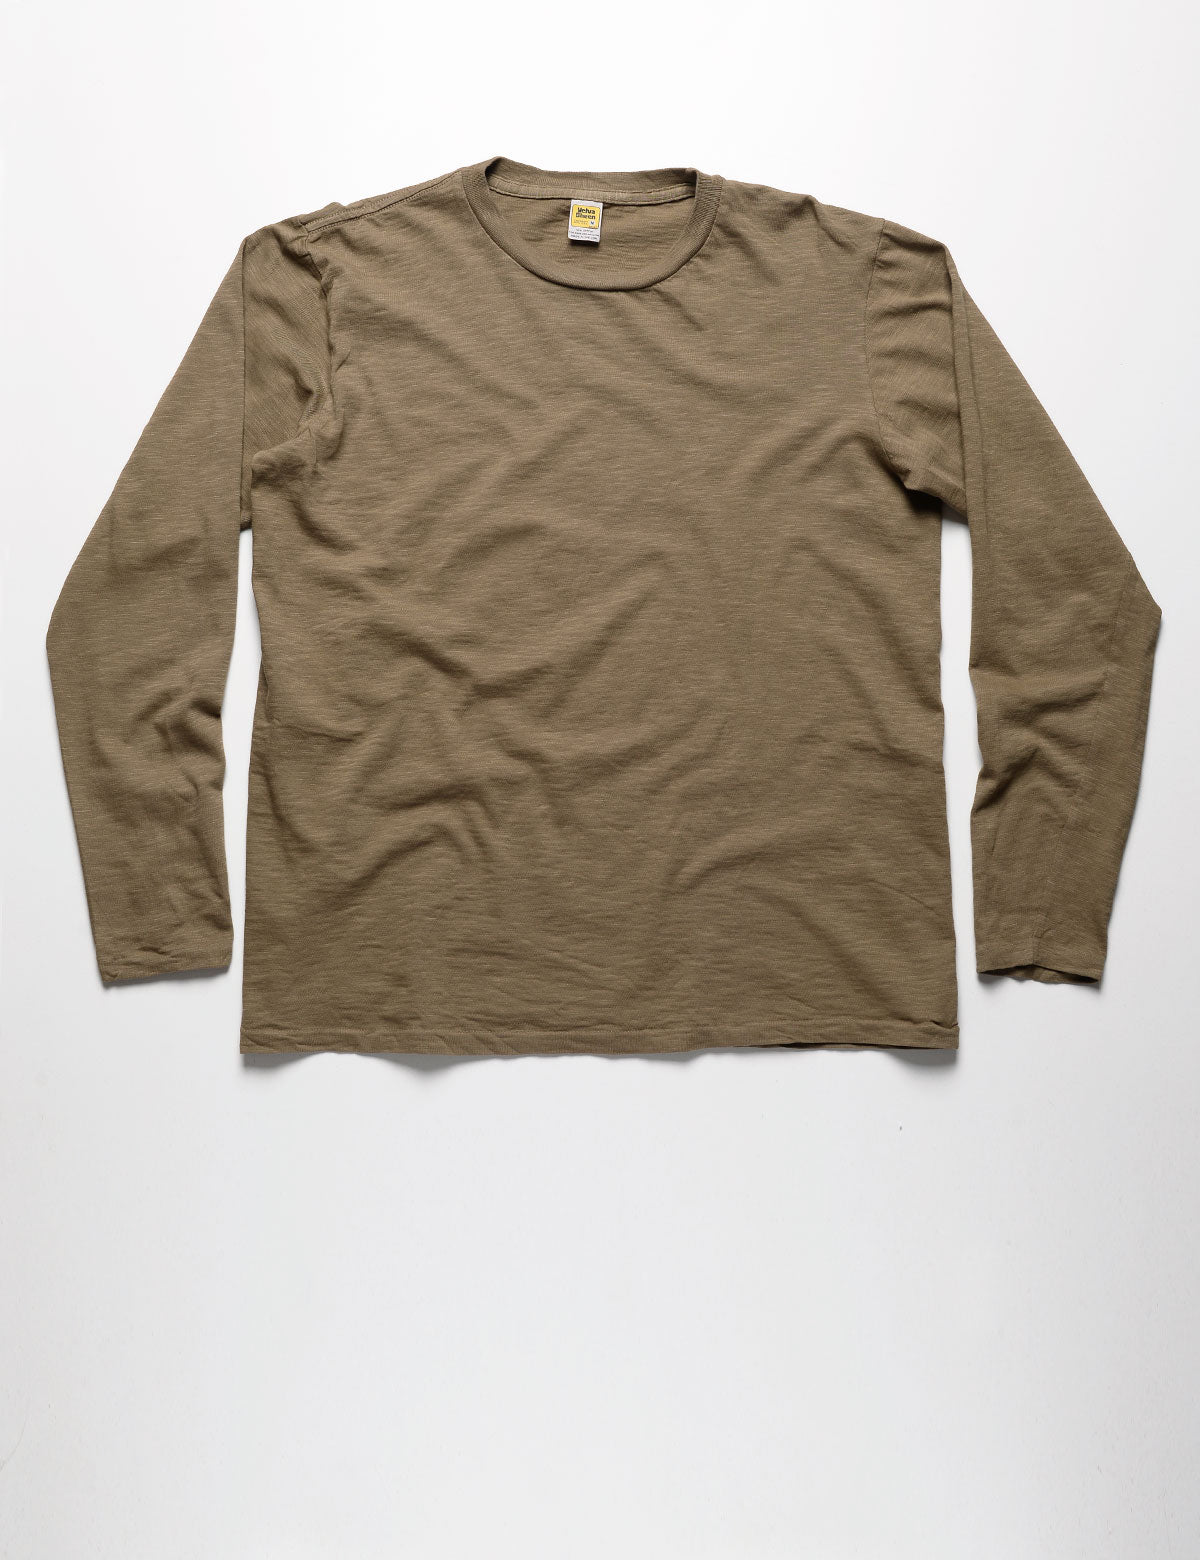 Full length flat shot of Velva Sheen Long Sleeve Crewneck T-Shirt in Olive